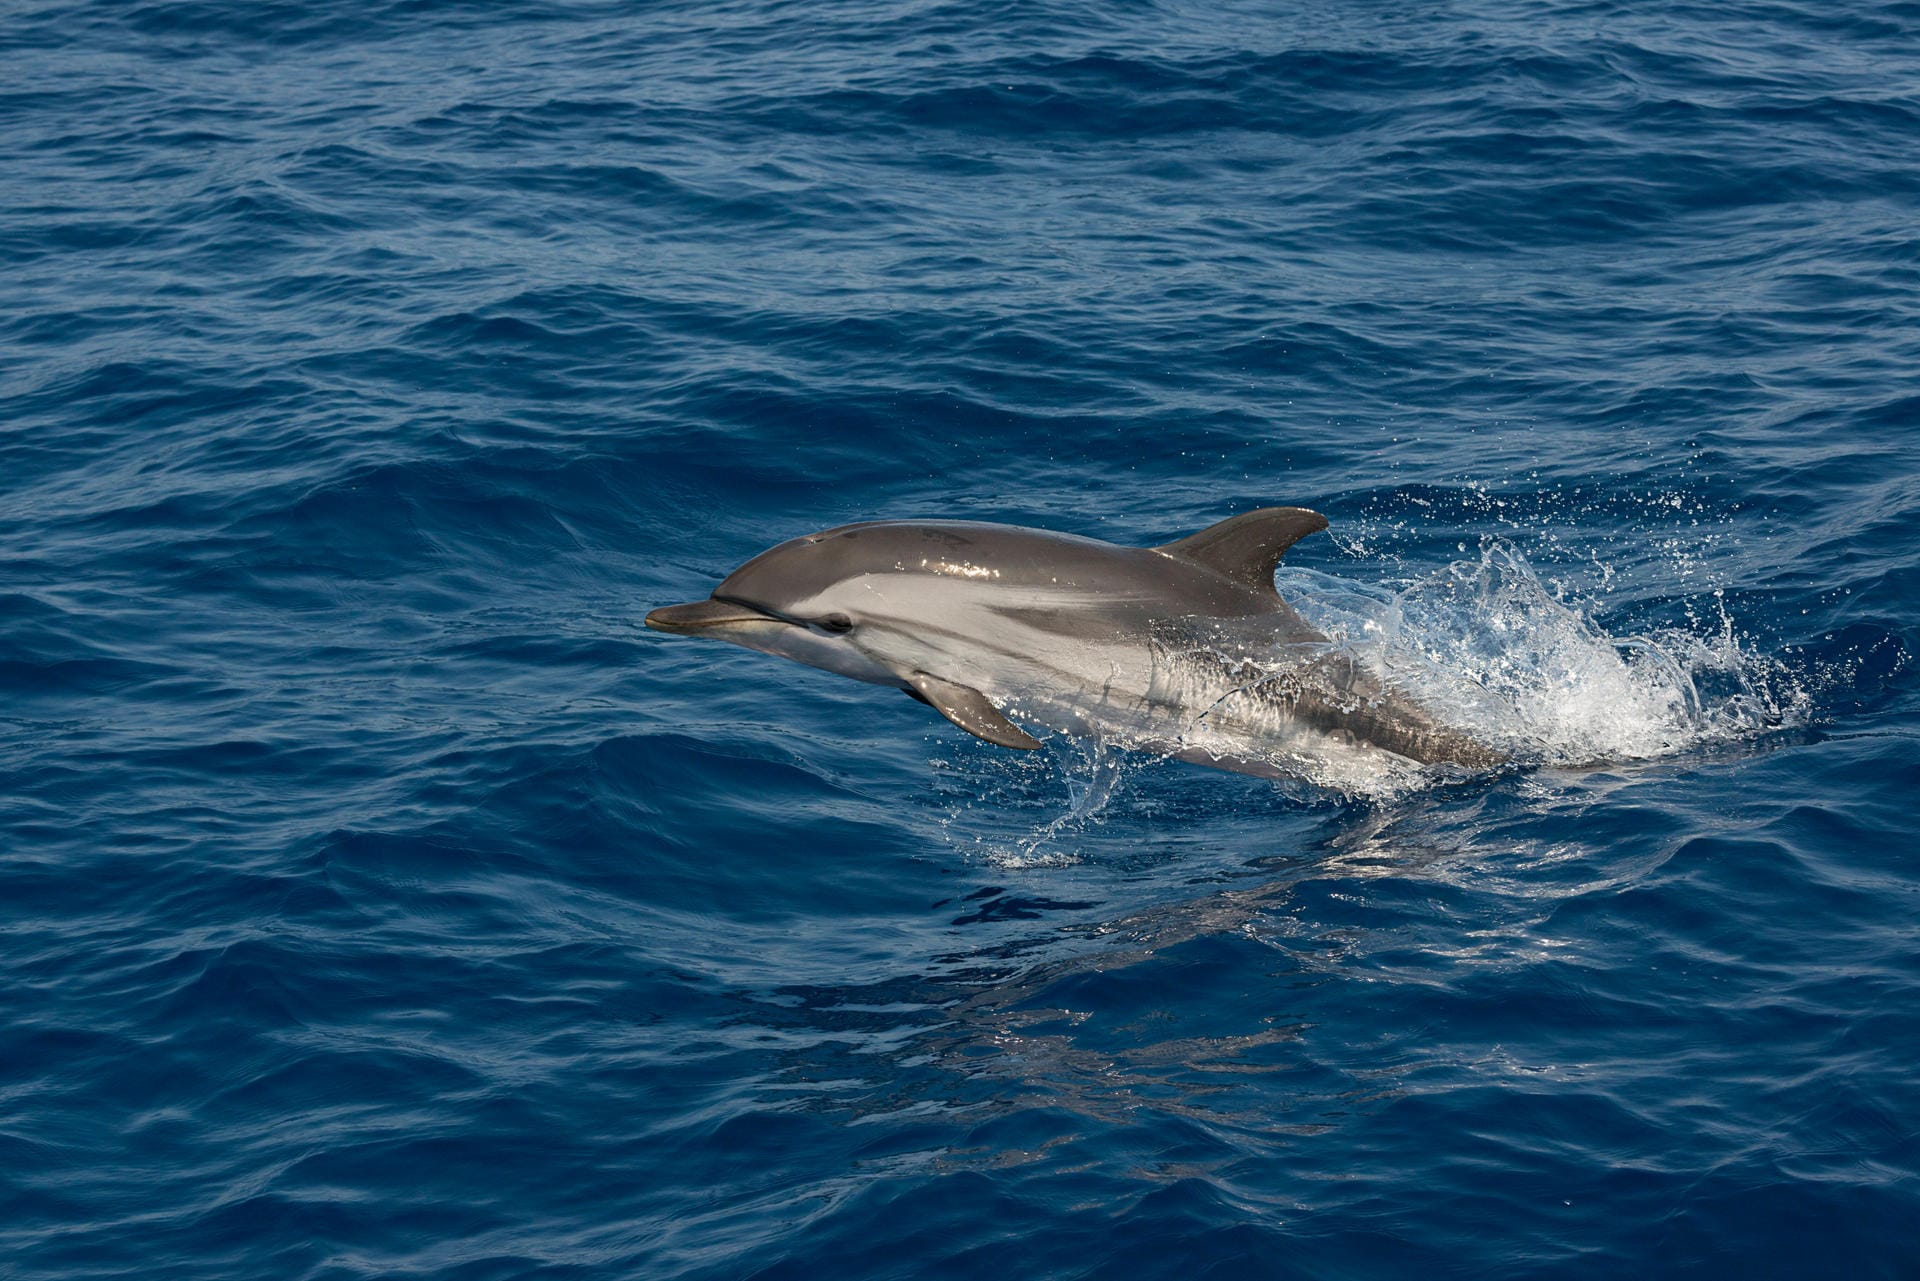 Delfin: Durch den verringerten Schiffsverkehr hat sich die Wasserqualität vielerorts verbessert und es herrscht in den Gewässern auch weniger Geräuschsmog. Das hat positive Effekte auf die Tierwelt. So wurden in den Häfen von Triest und Cagliaria wieder Delfine gesichtet. (Symbolbild)